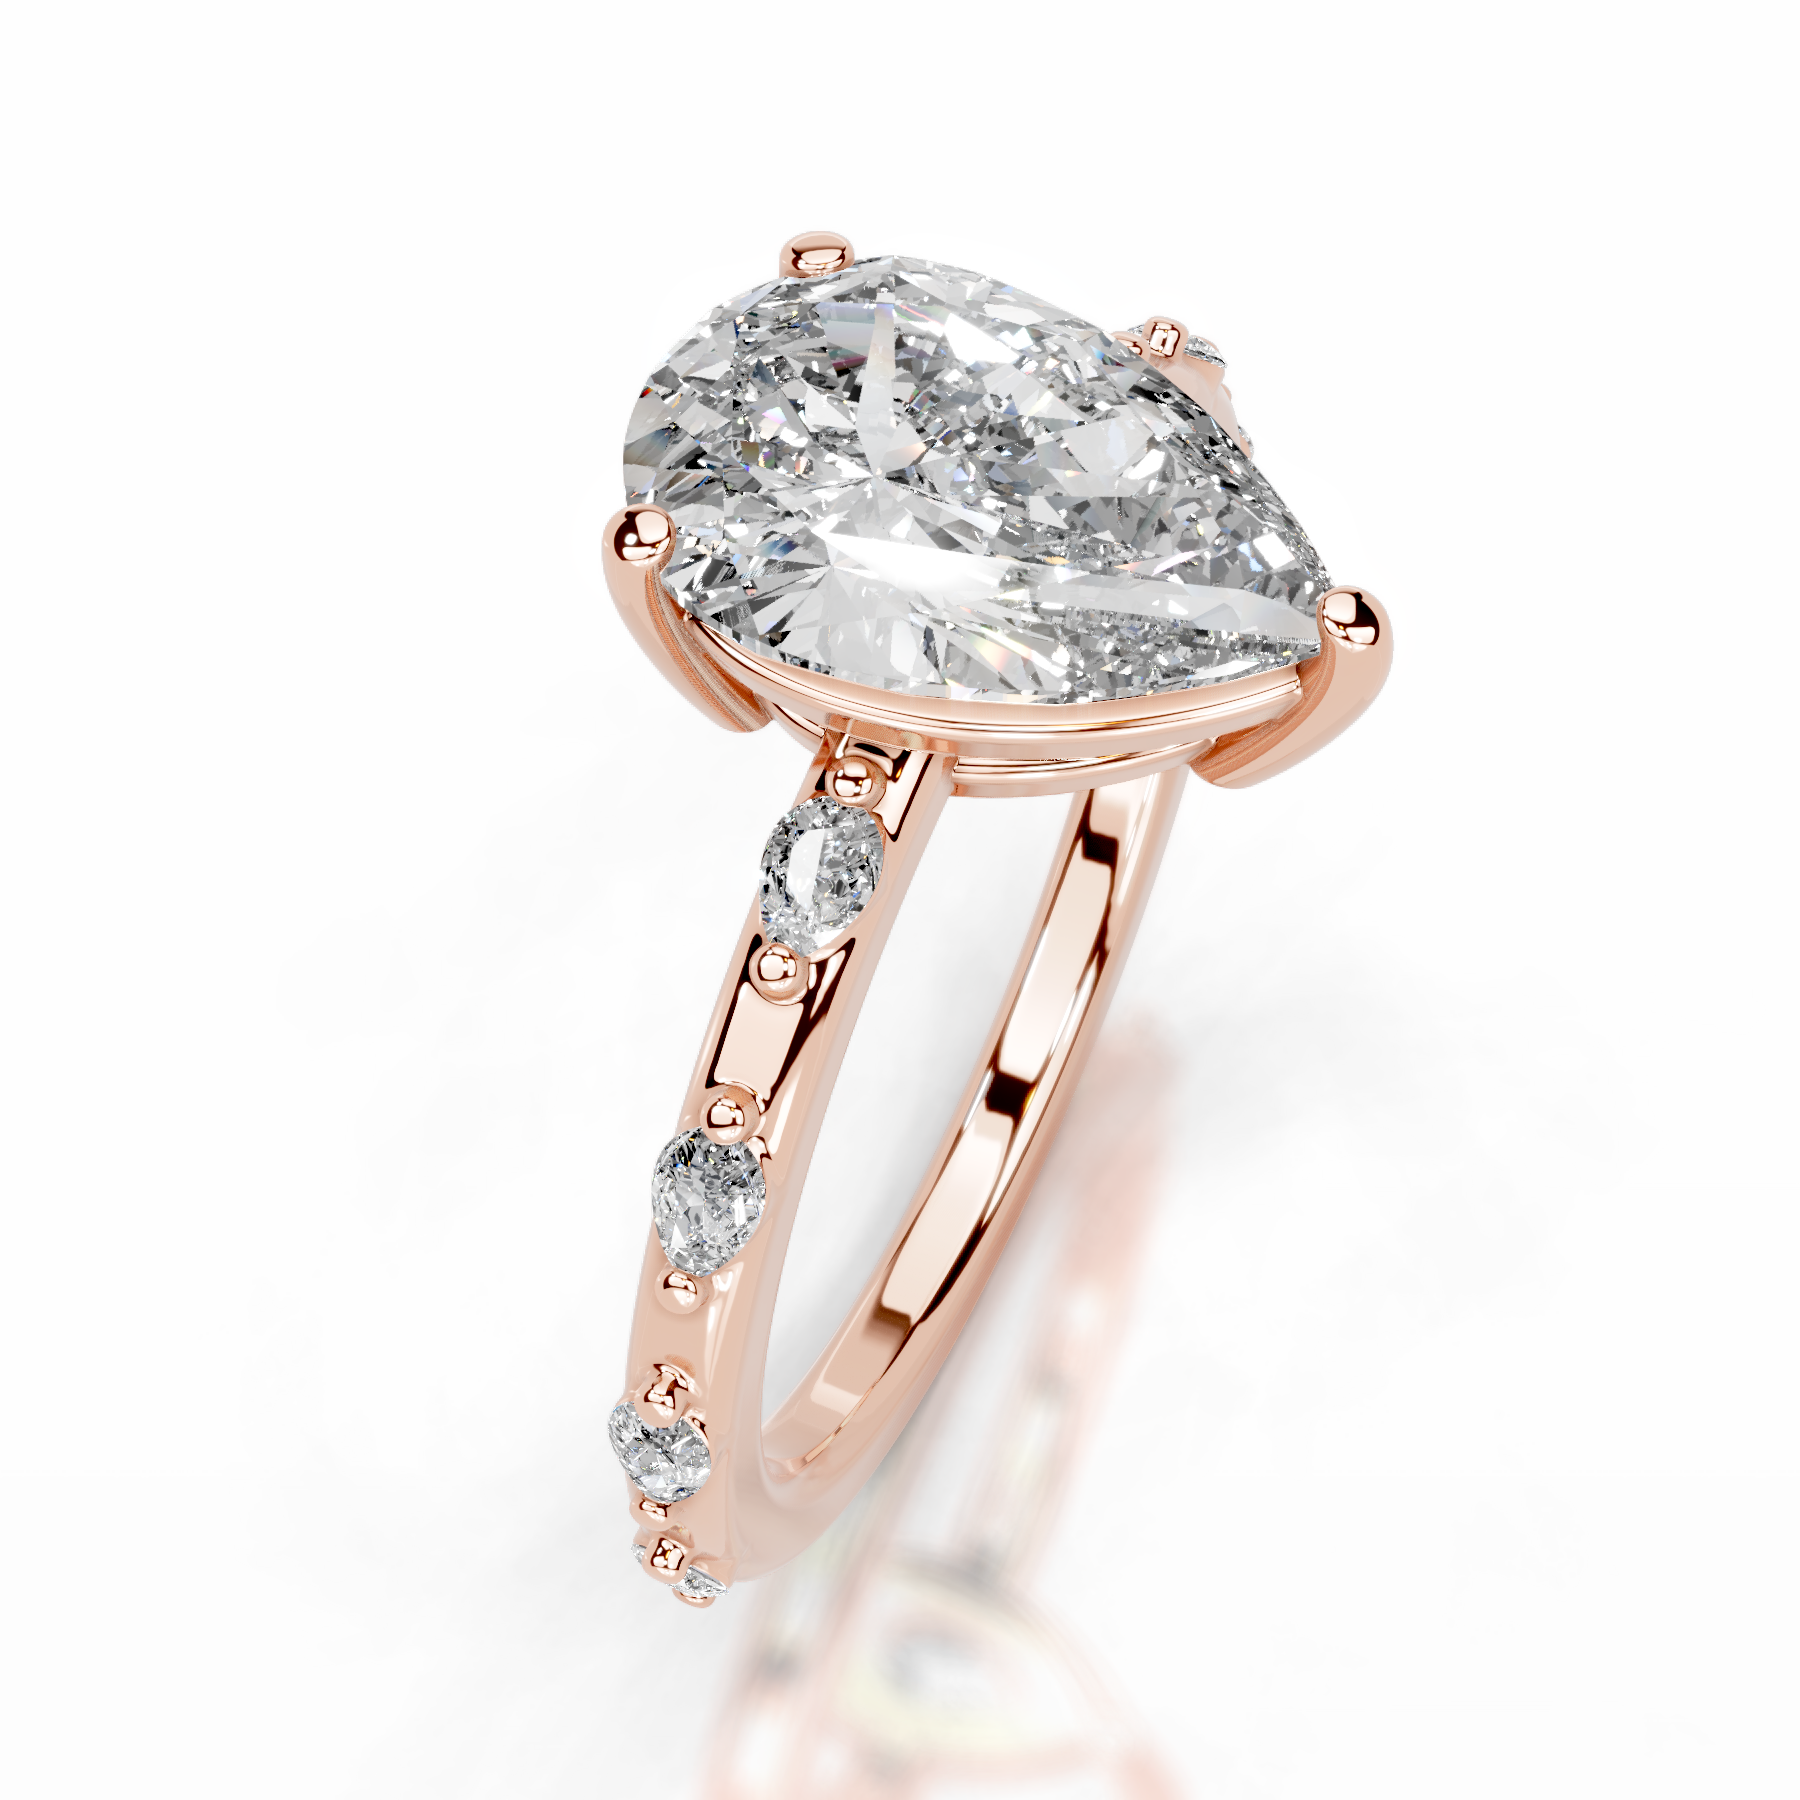 Nadya Diamond Engagement Ring   (2.2 Carat) -14K Rose Gold